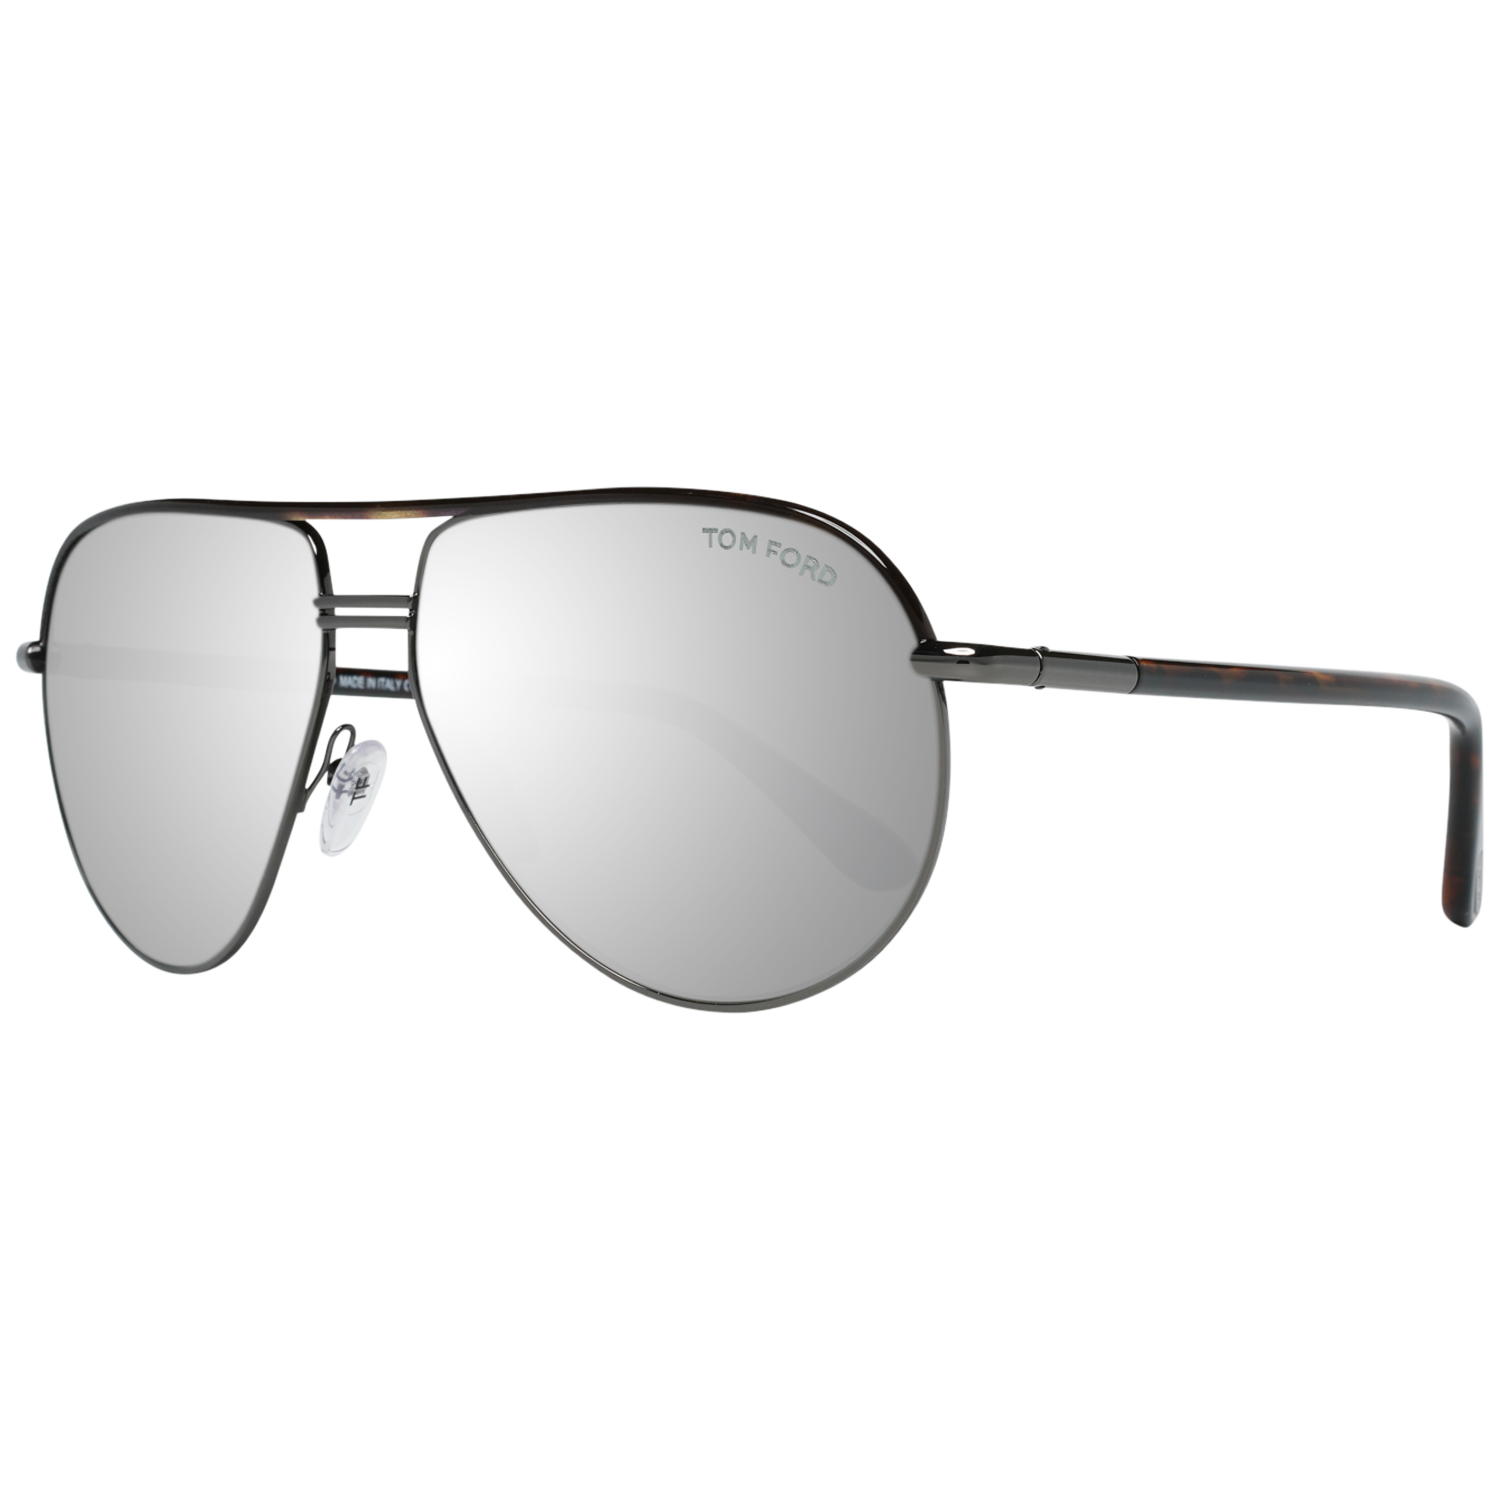 Tom Ford Sunglasses FT0285 52F 61 - Killer Brands